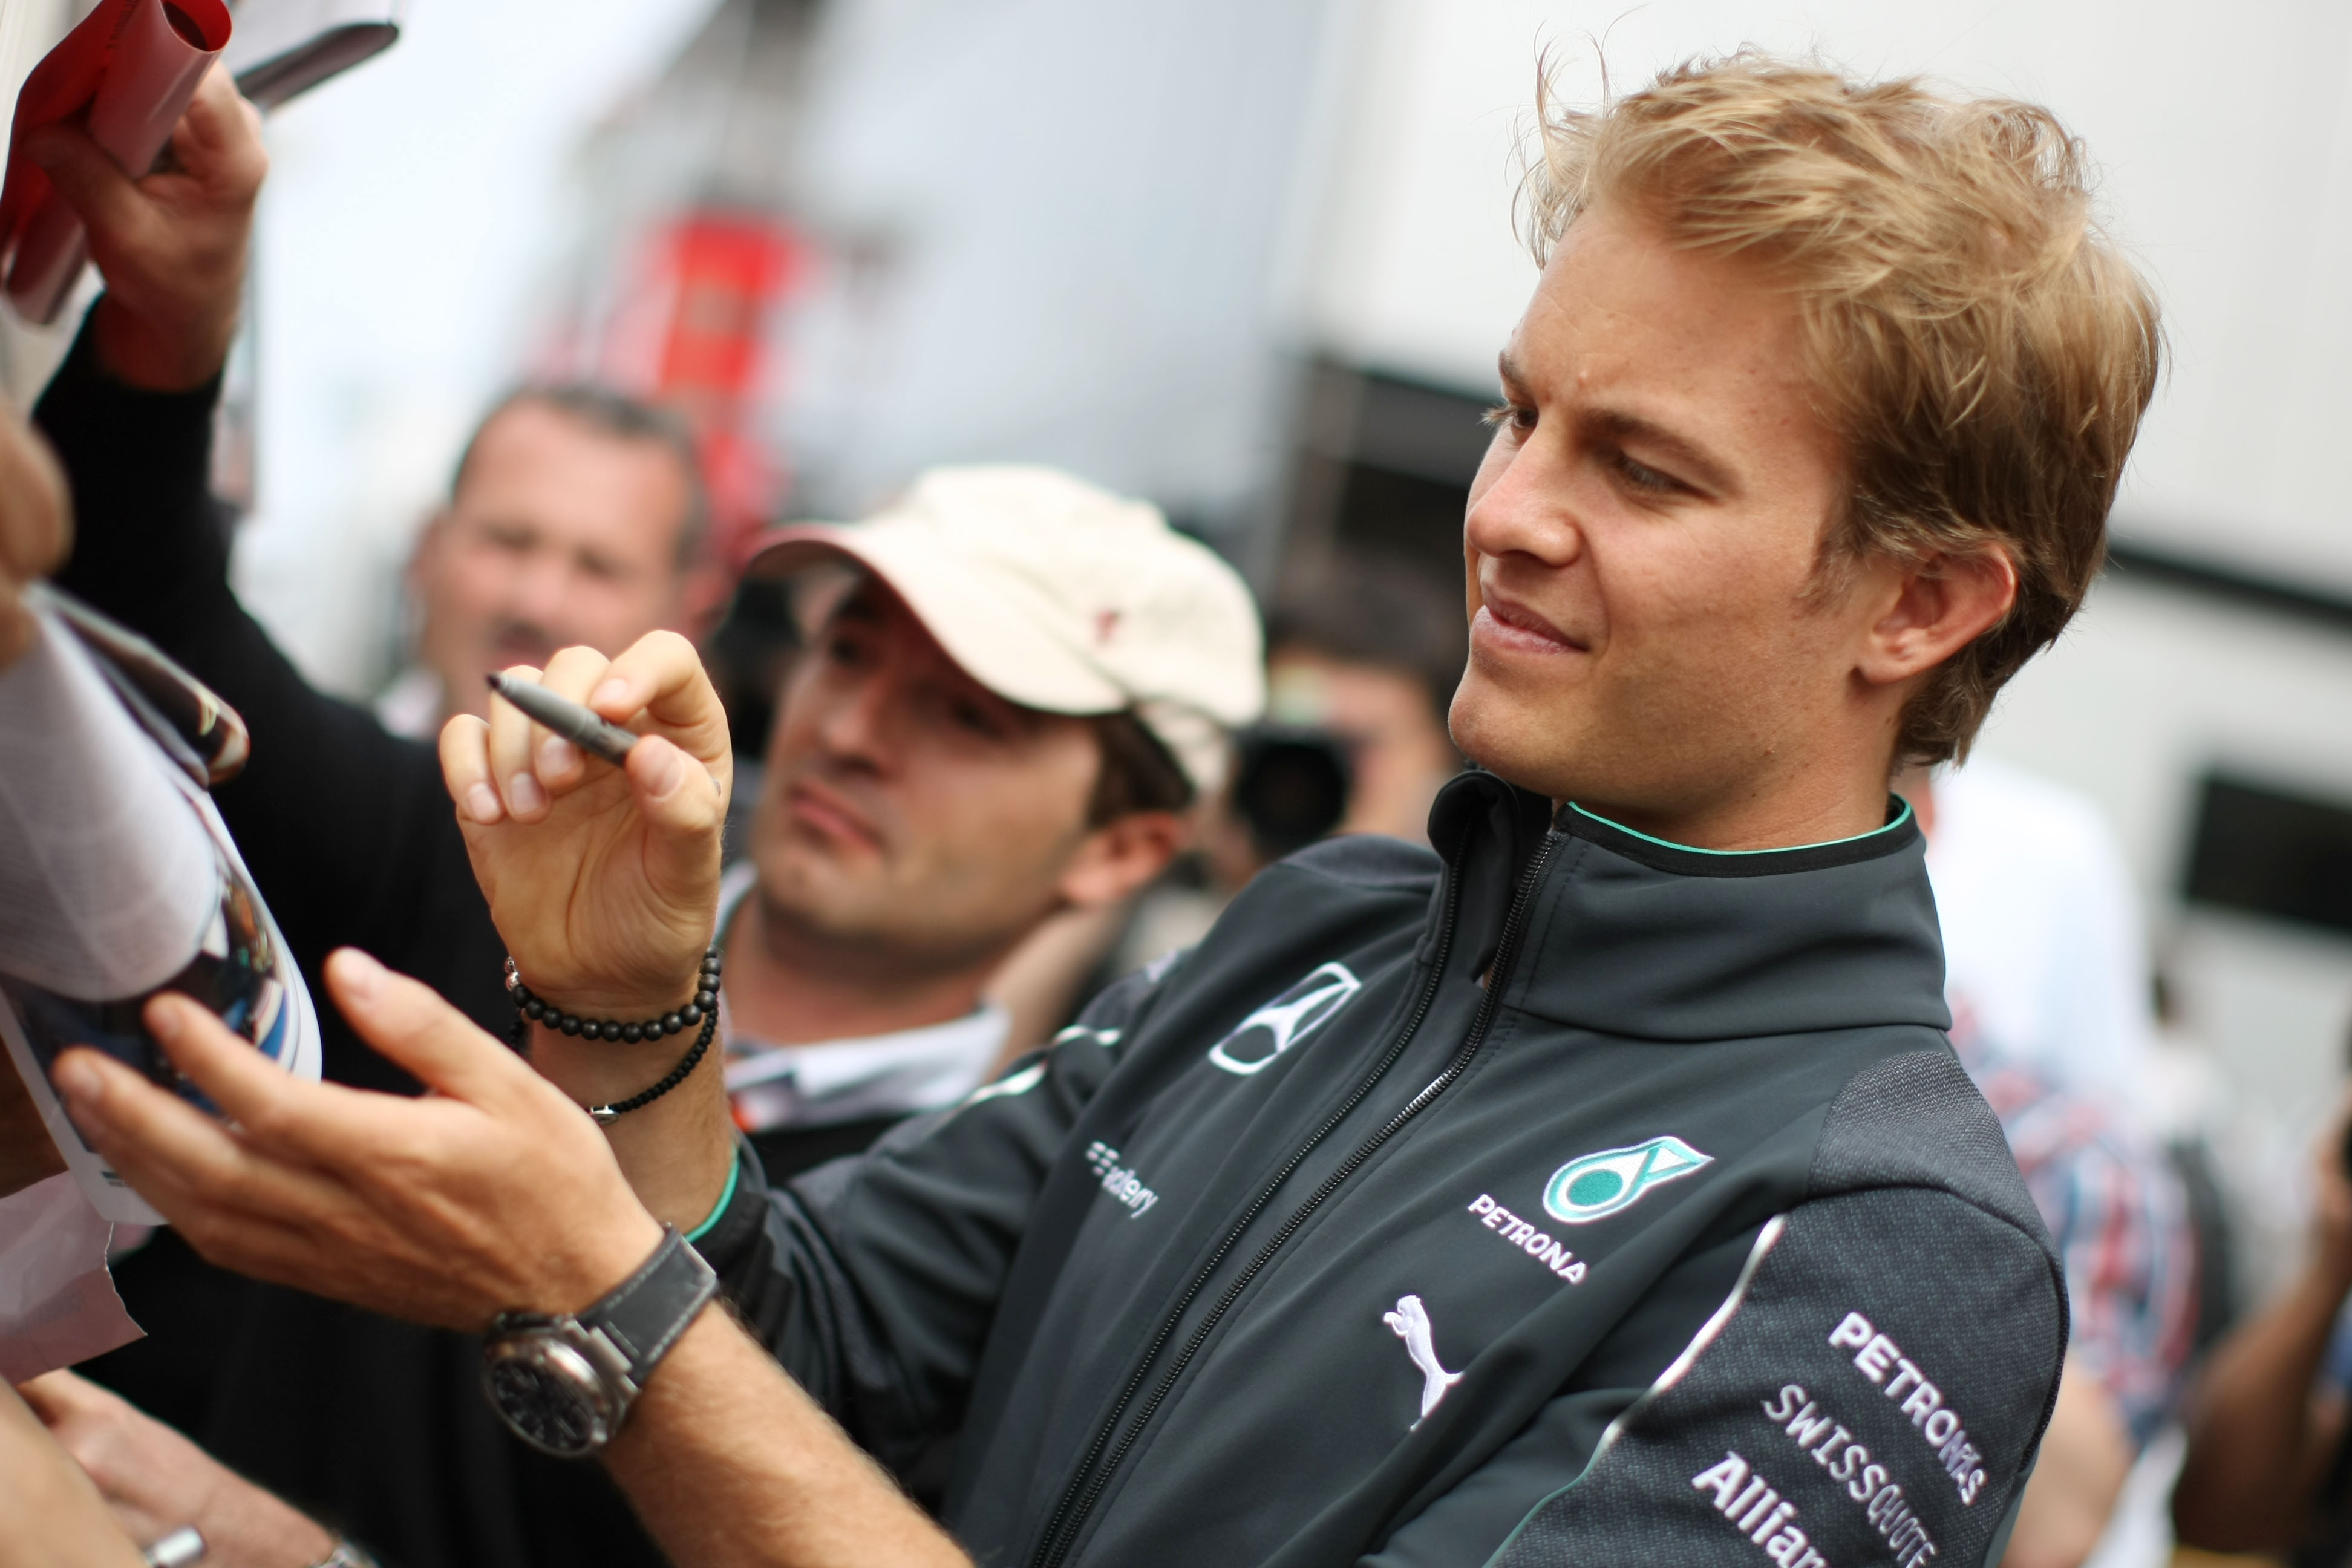 ‘Contractverlenging voor Rosberg’